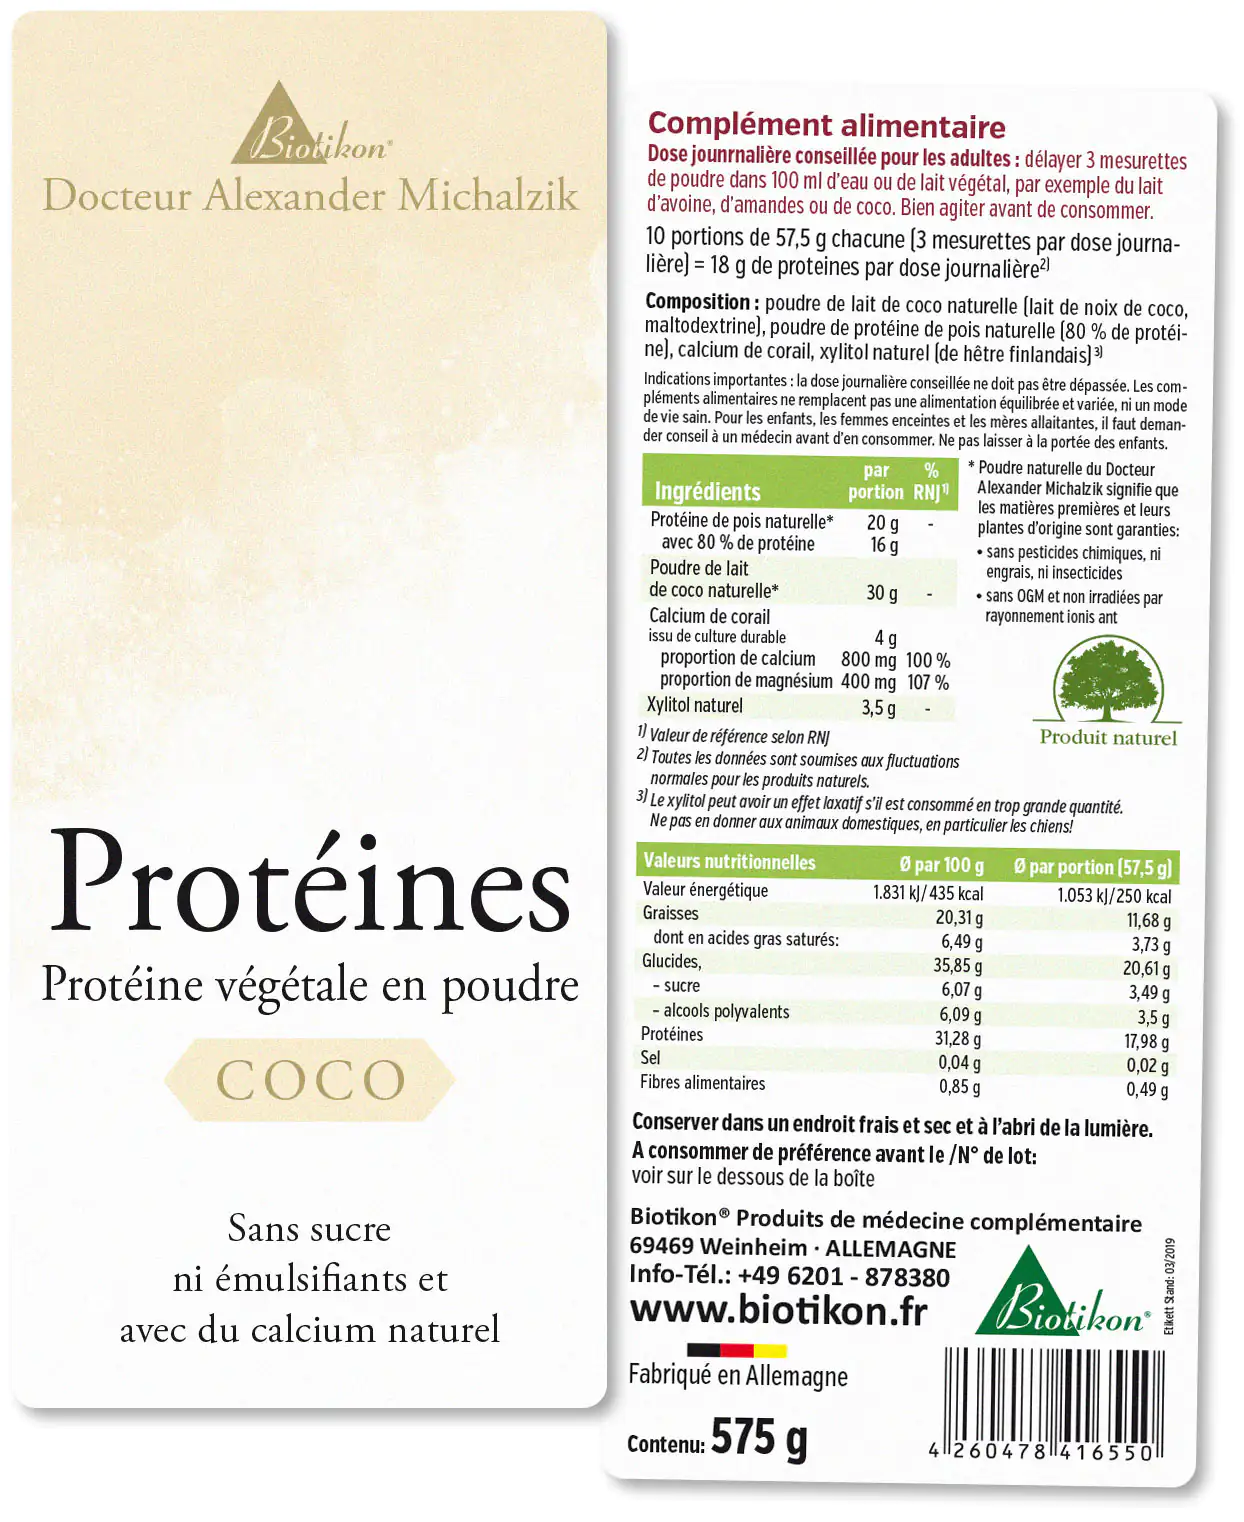 Protéines - en lot de 3, 2x Cacao + Coco